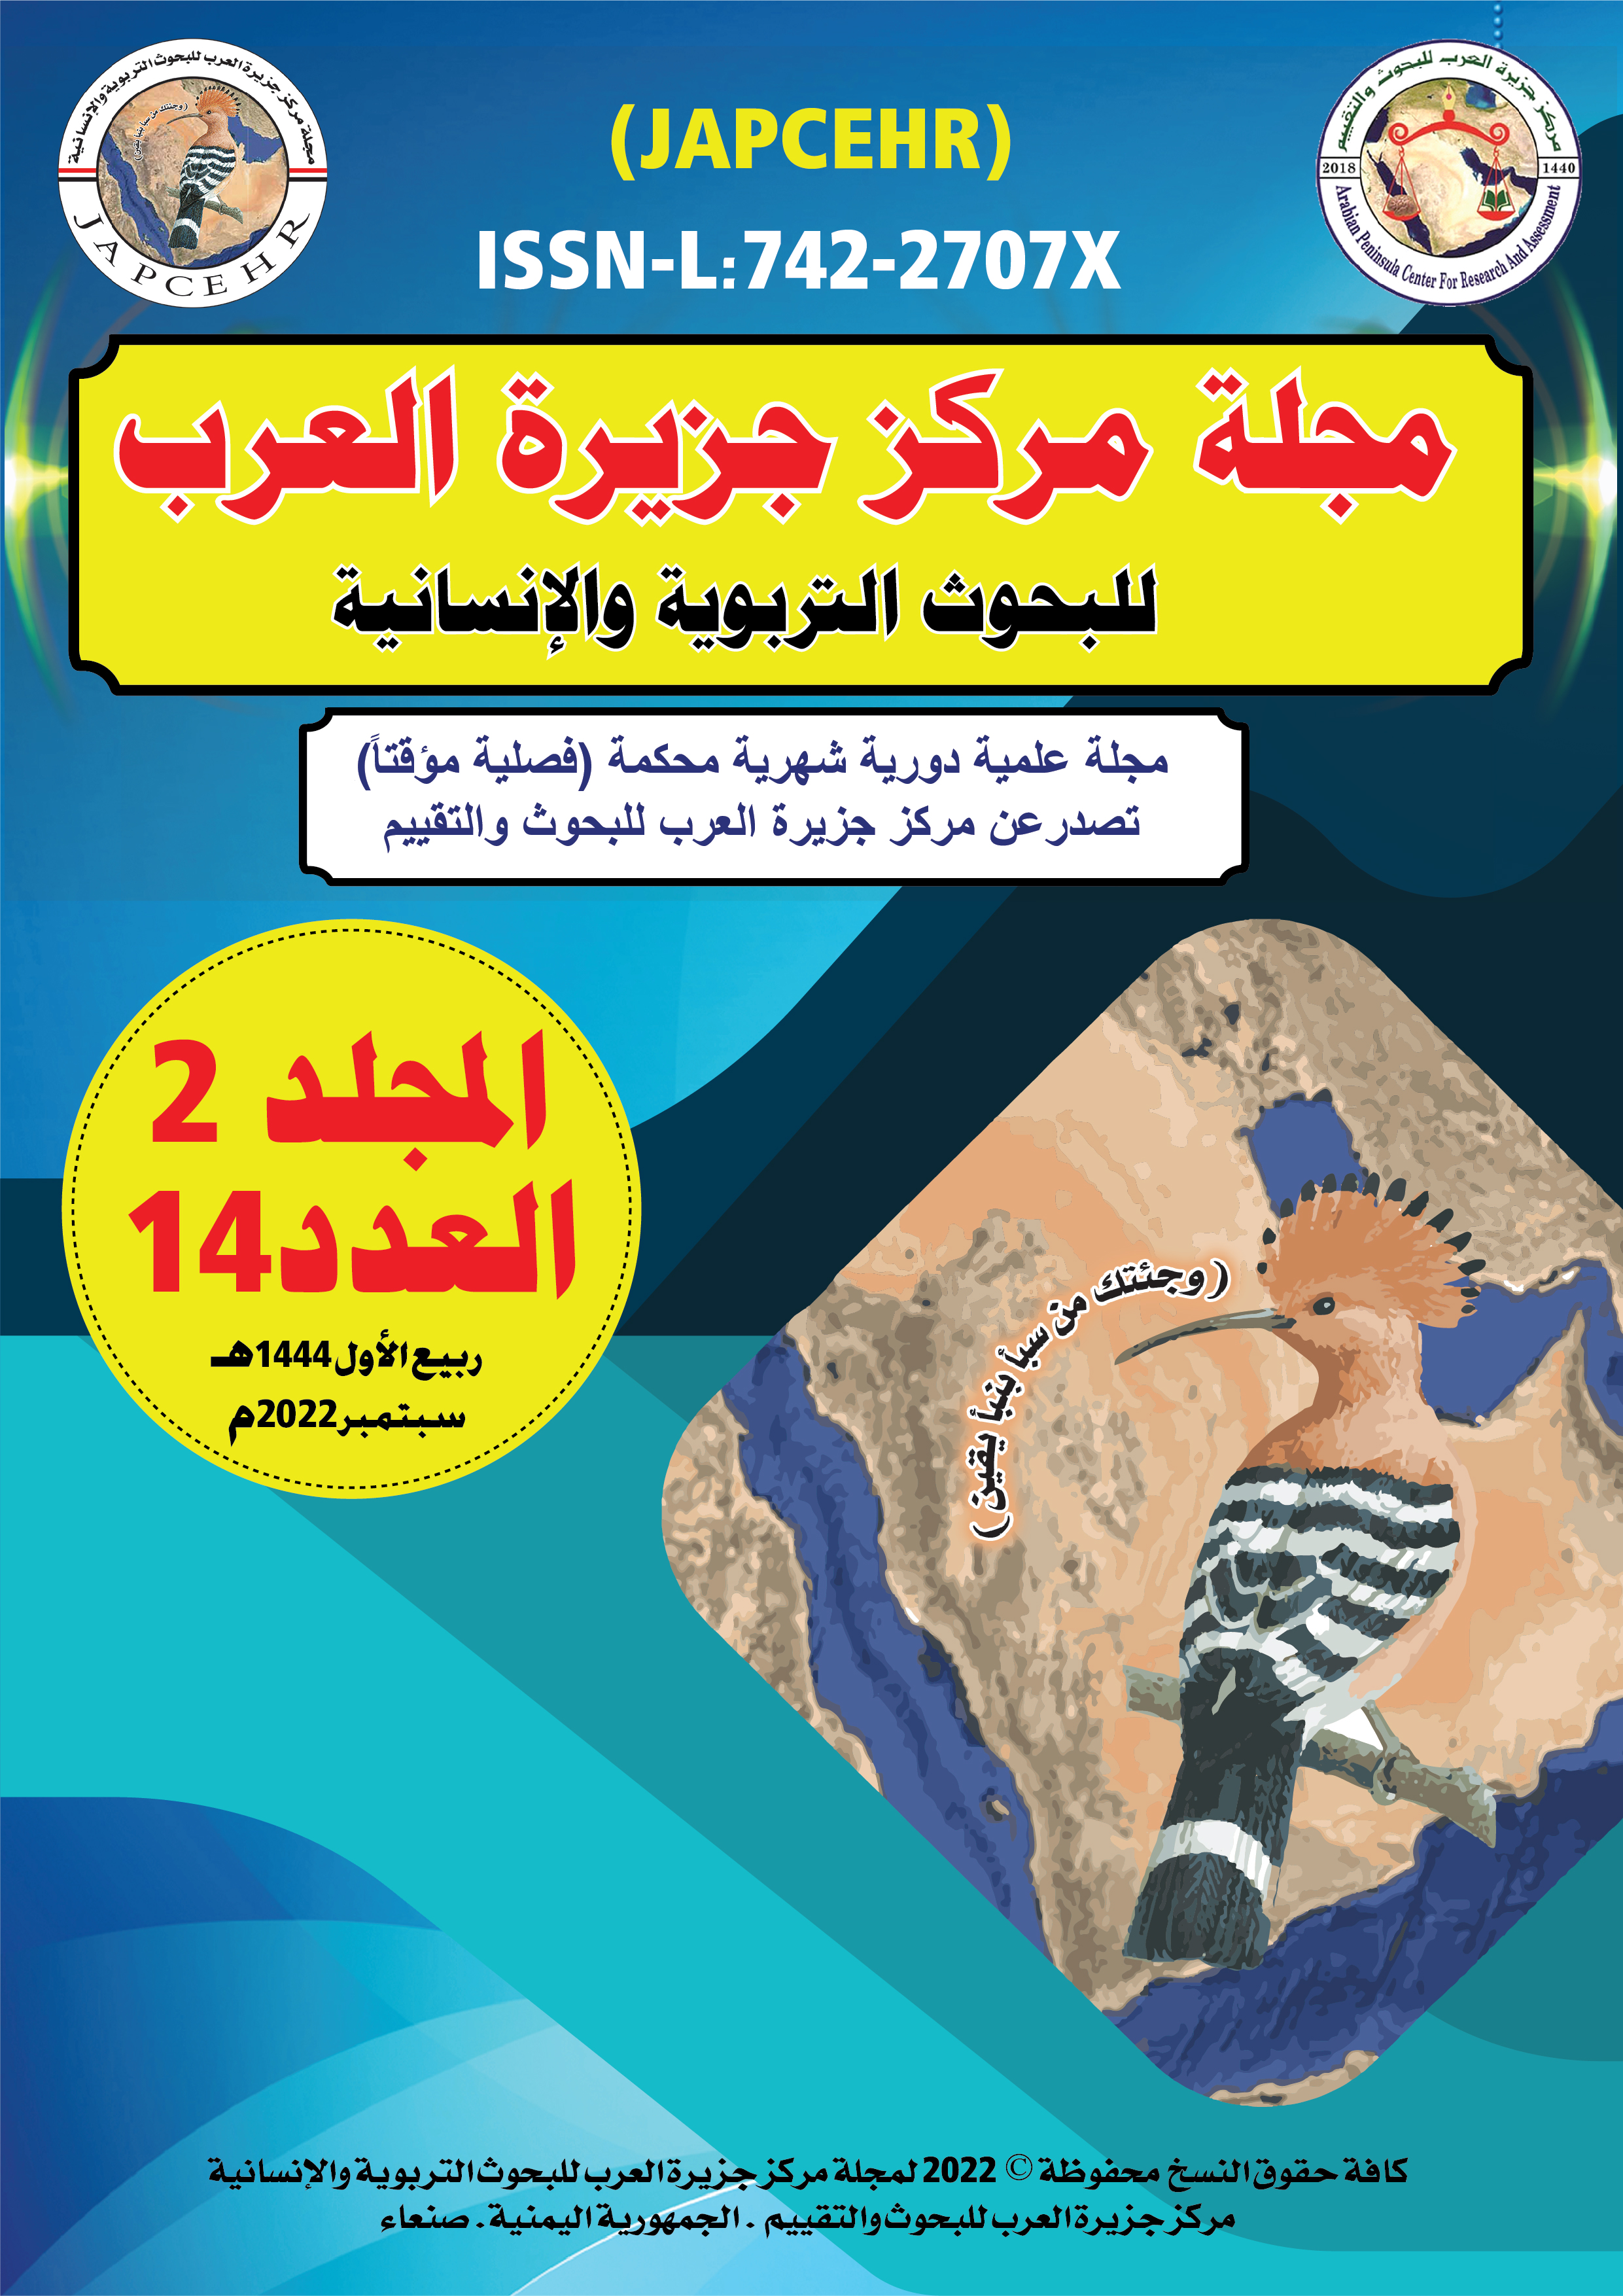 كتاب مركز جزيرة العرب (4) 2020 دور الفروض الكفائية في تحقيق التنمية المستدامة (رؤية إسلامية) د. يحيى أحمد المرهبي